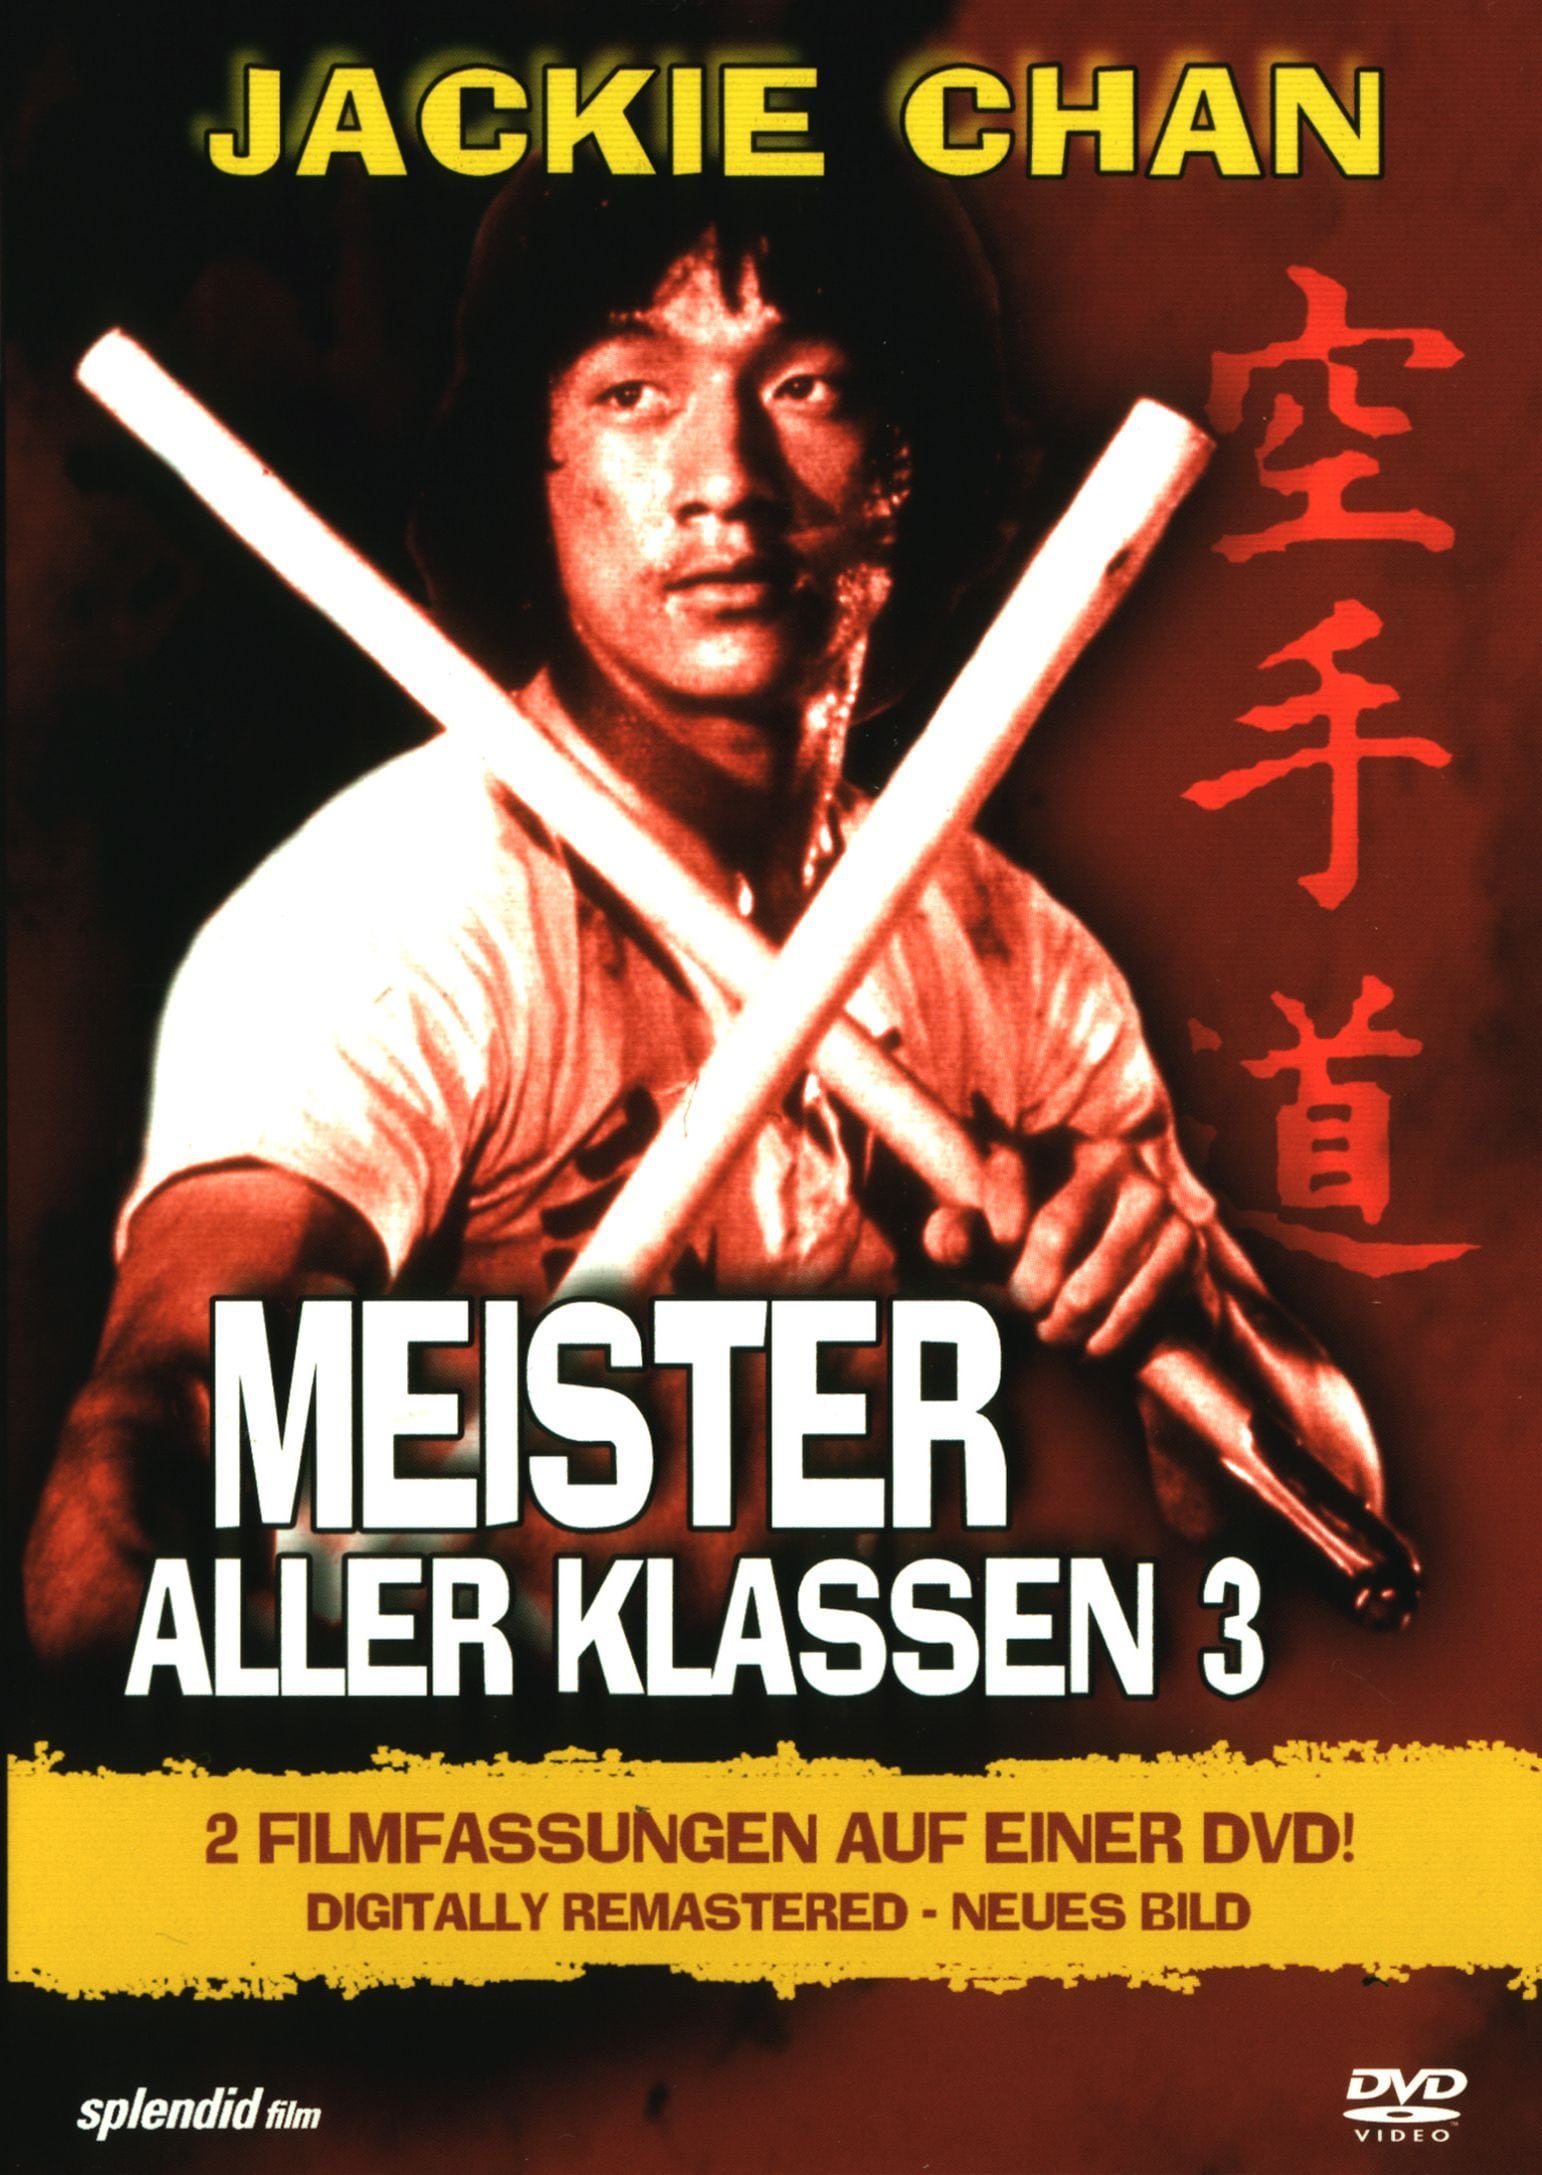 Plakat von "Meister aller Klassen 3"